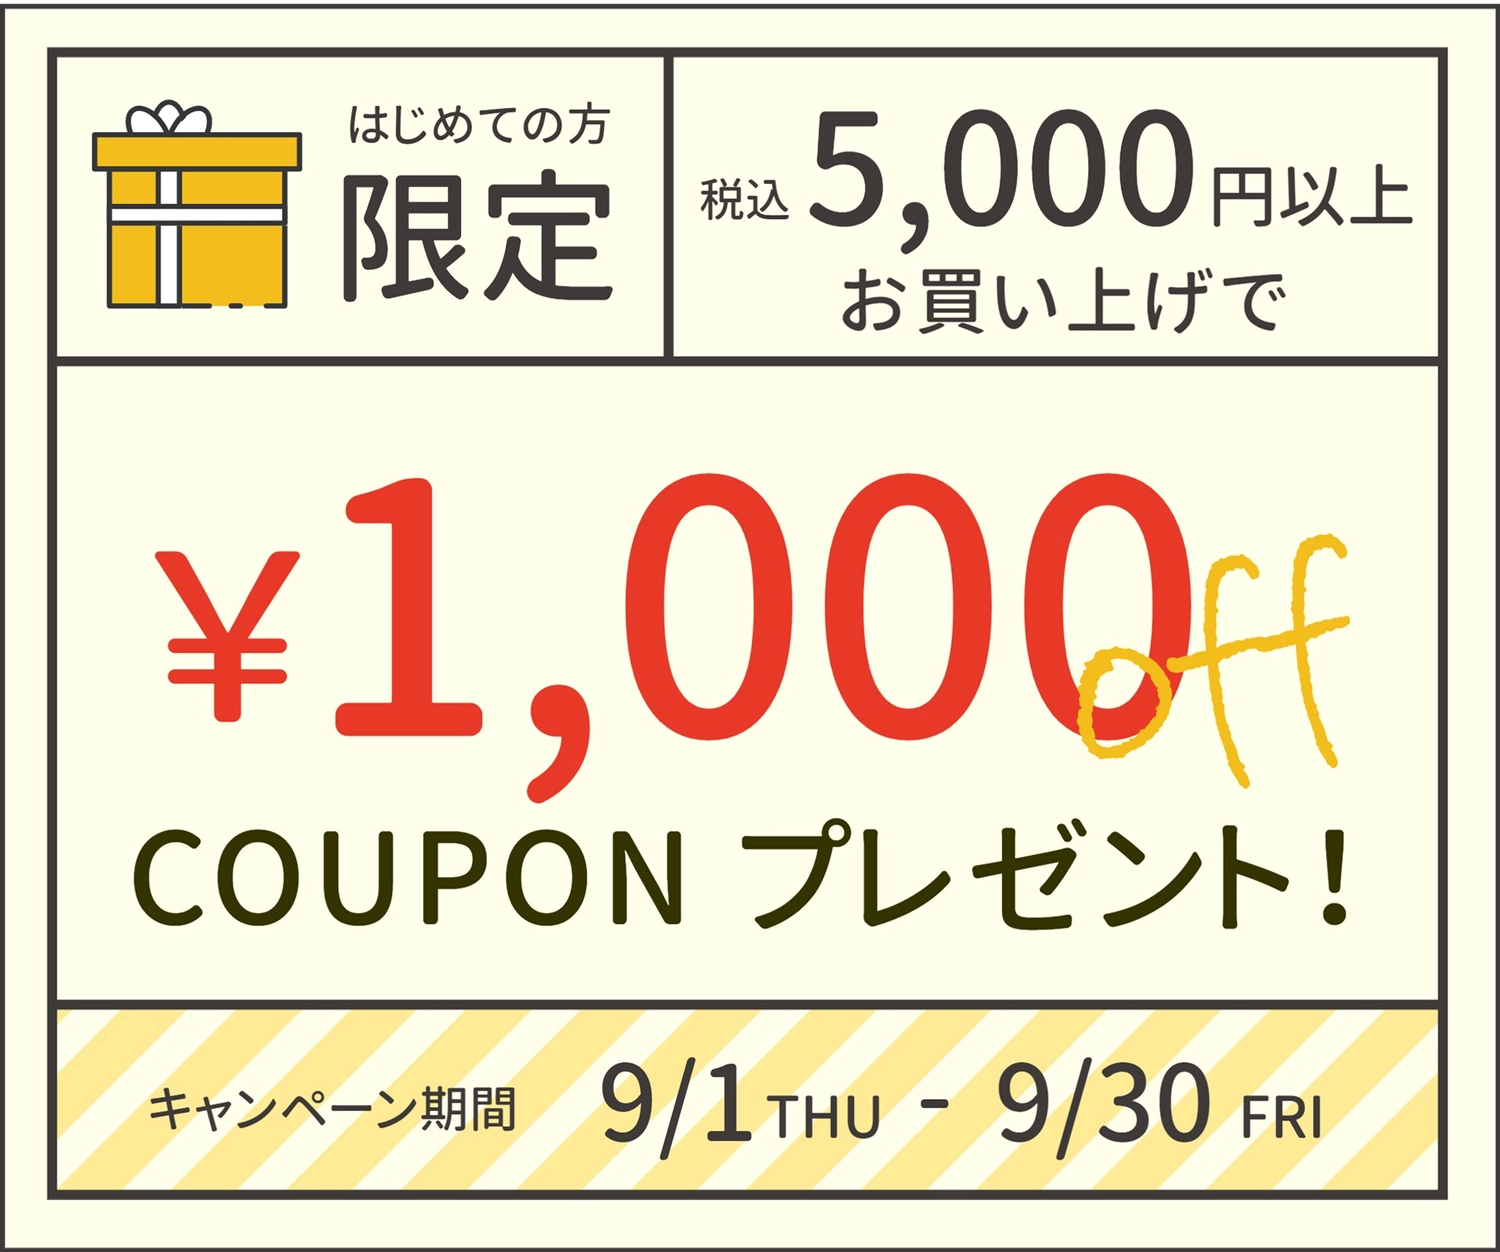 五千円で千円オフクーポンプレゼント, 離開, 新成員, 店鋪, 折價券 模板